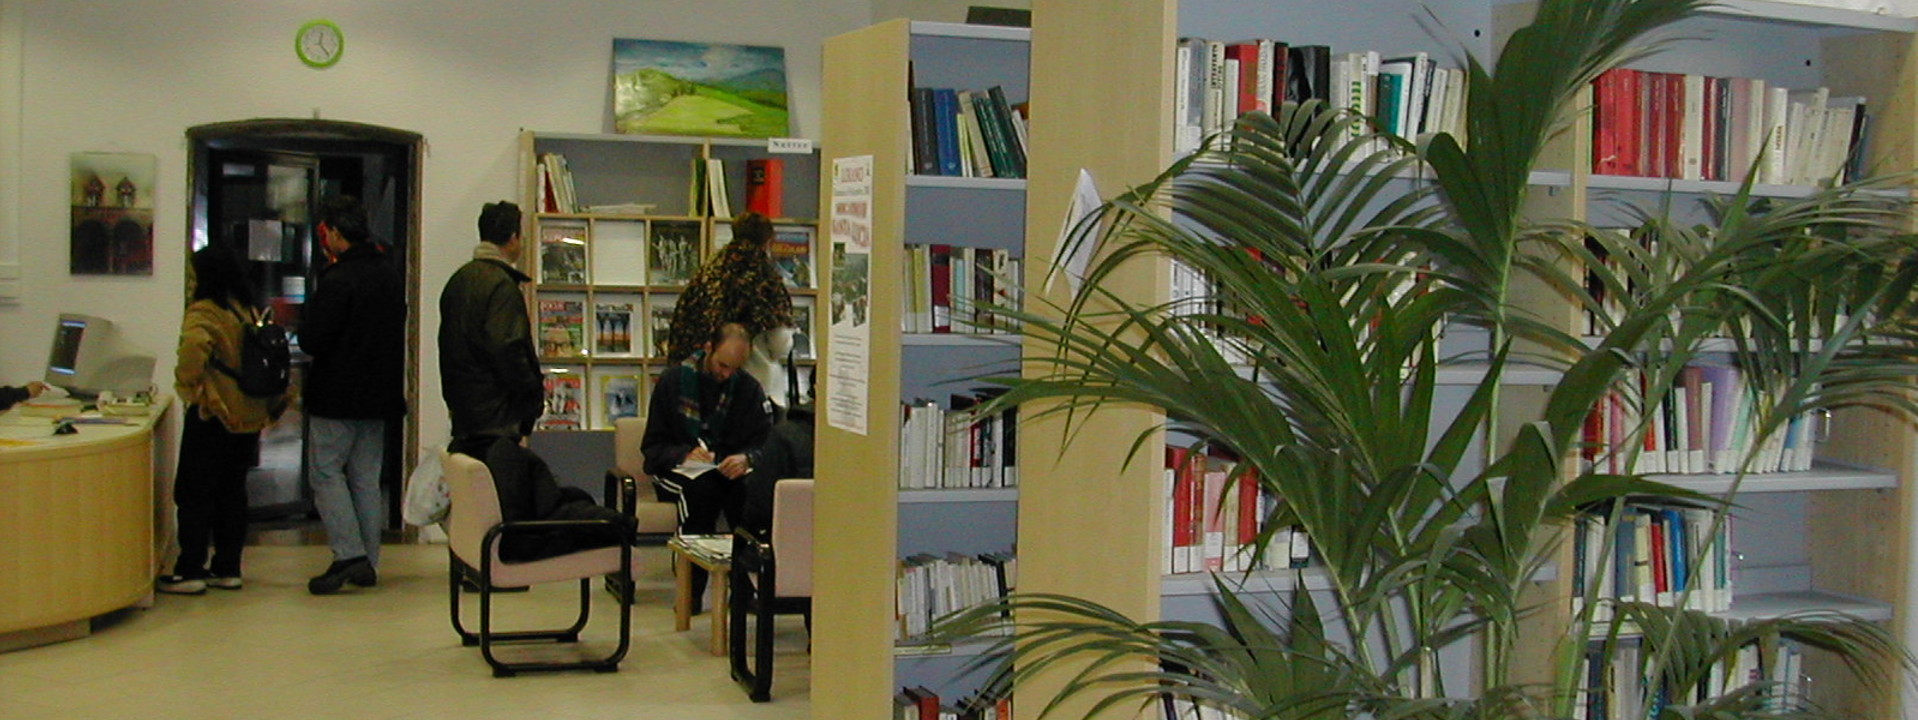 Immagine di una biblioteca